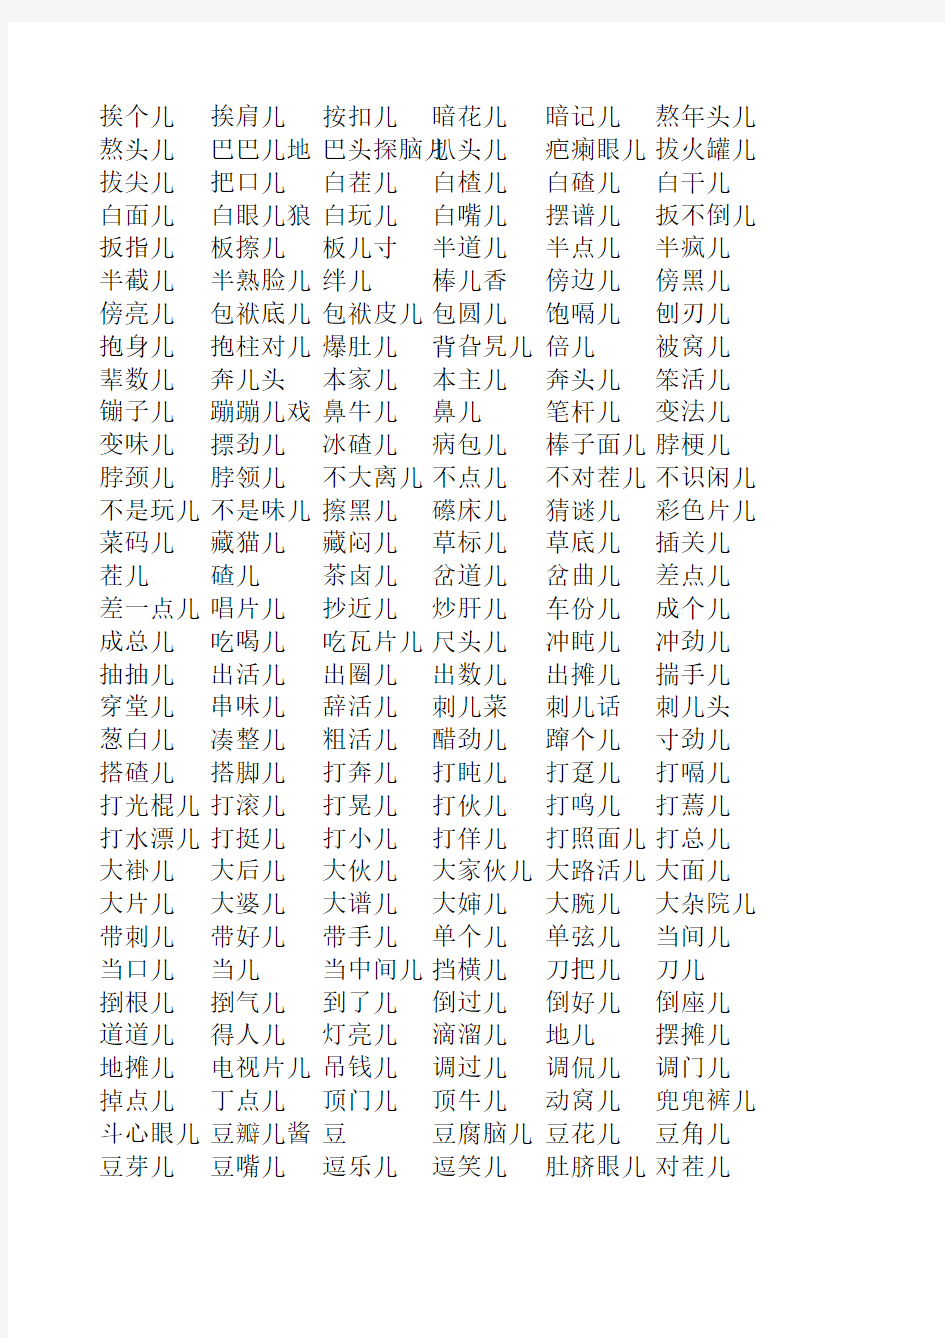 第六套汉语字典全部儿化音